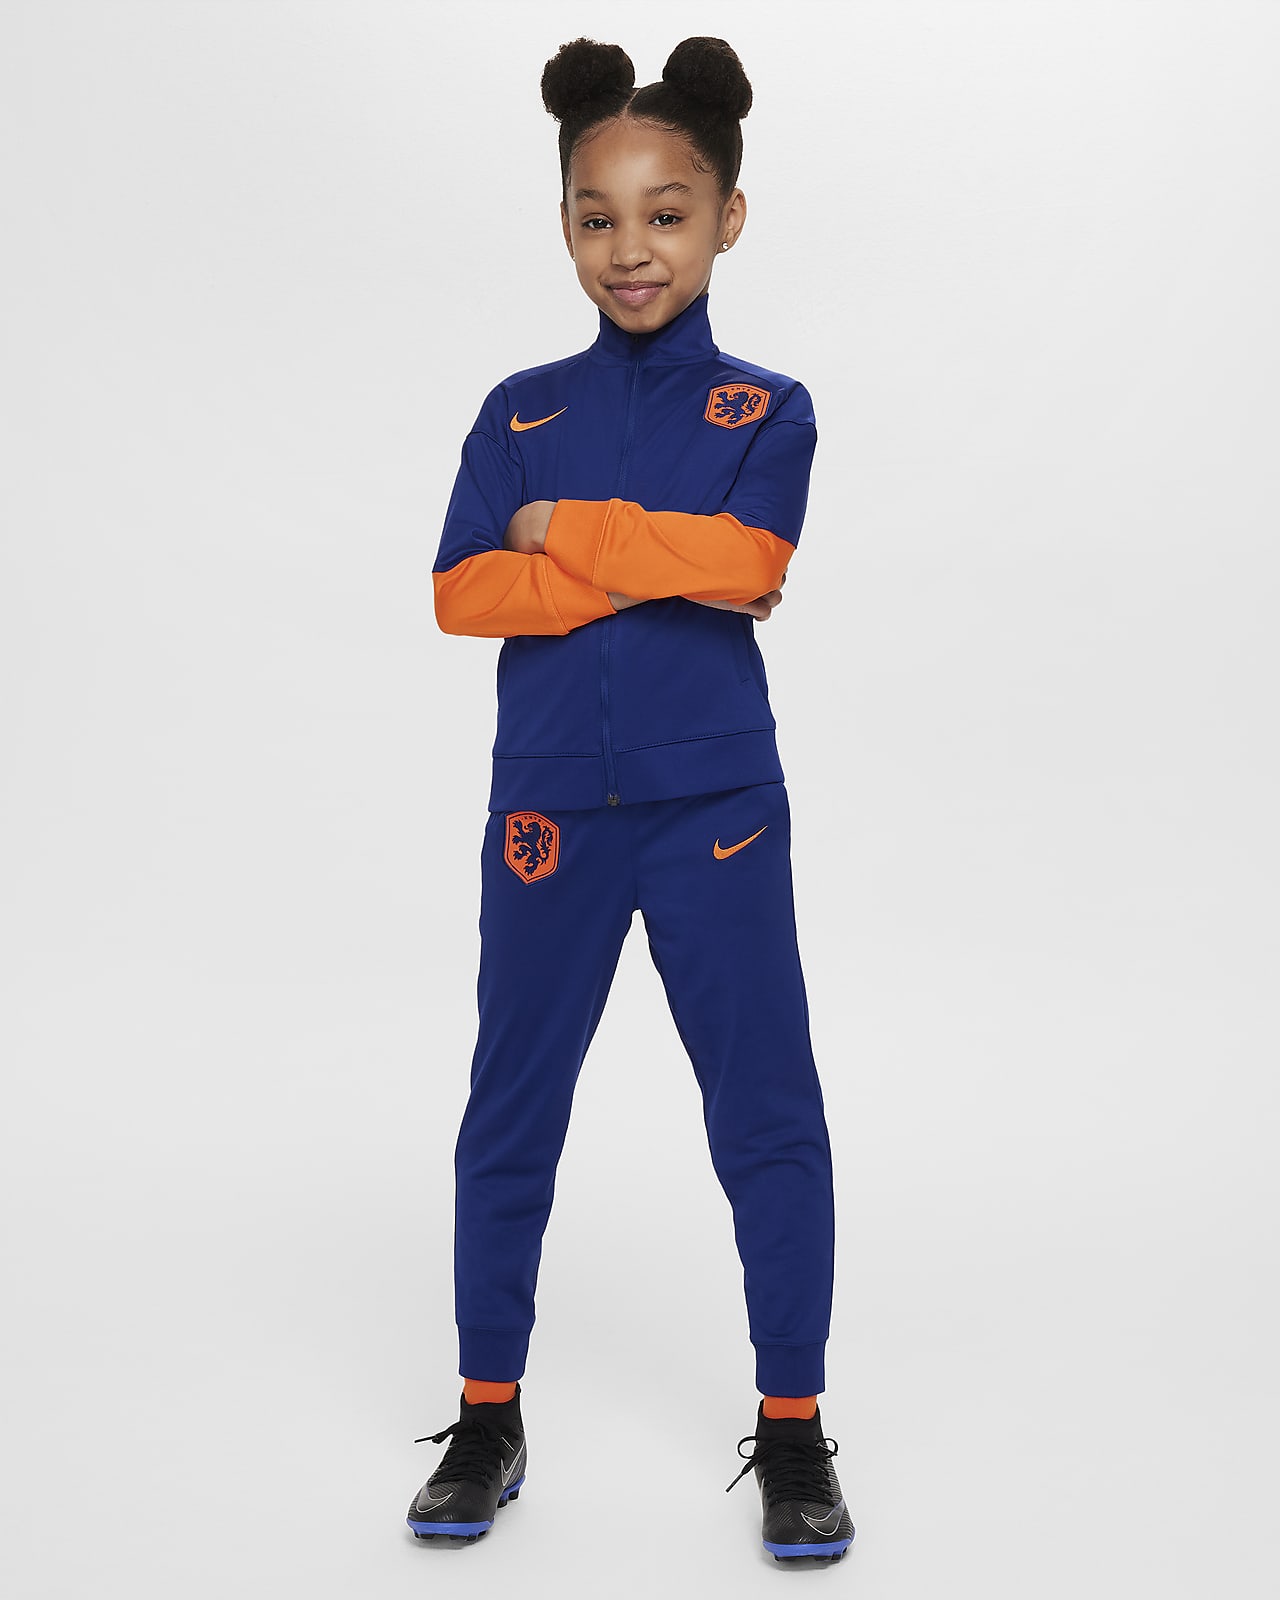 Hollanda Strike Nike Dri-FIT Örgü Küçük Çocuk Futbol Eşofmanı